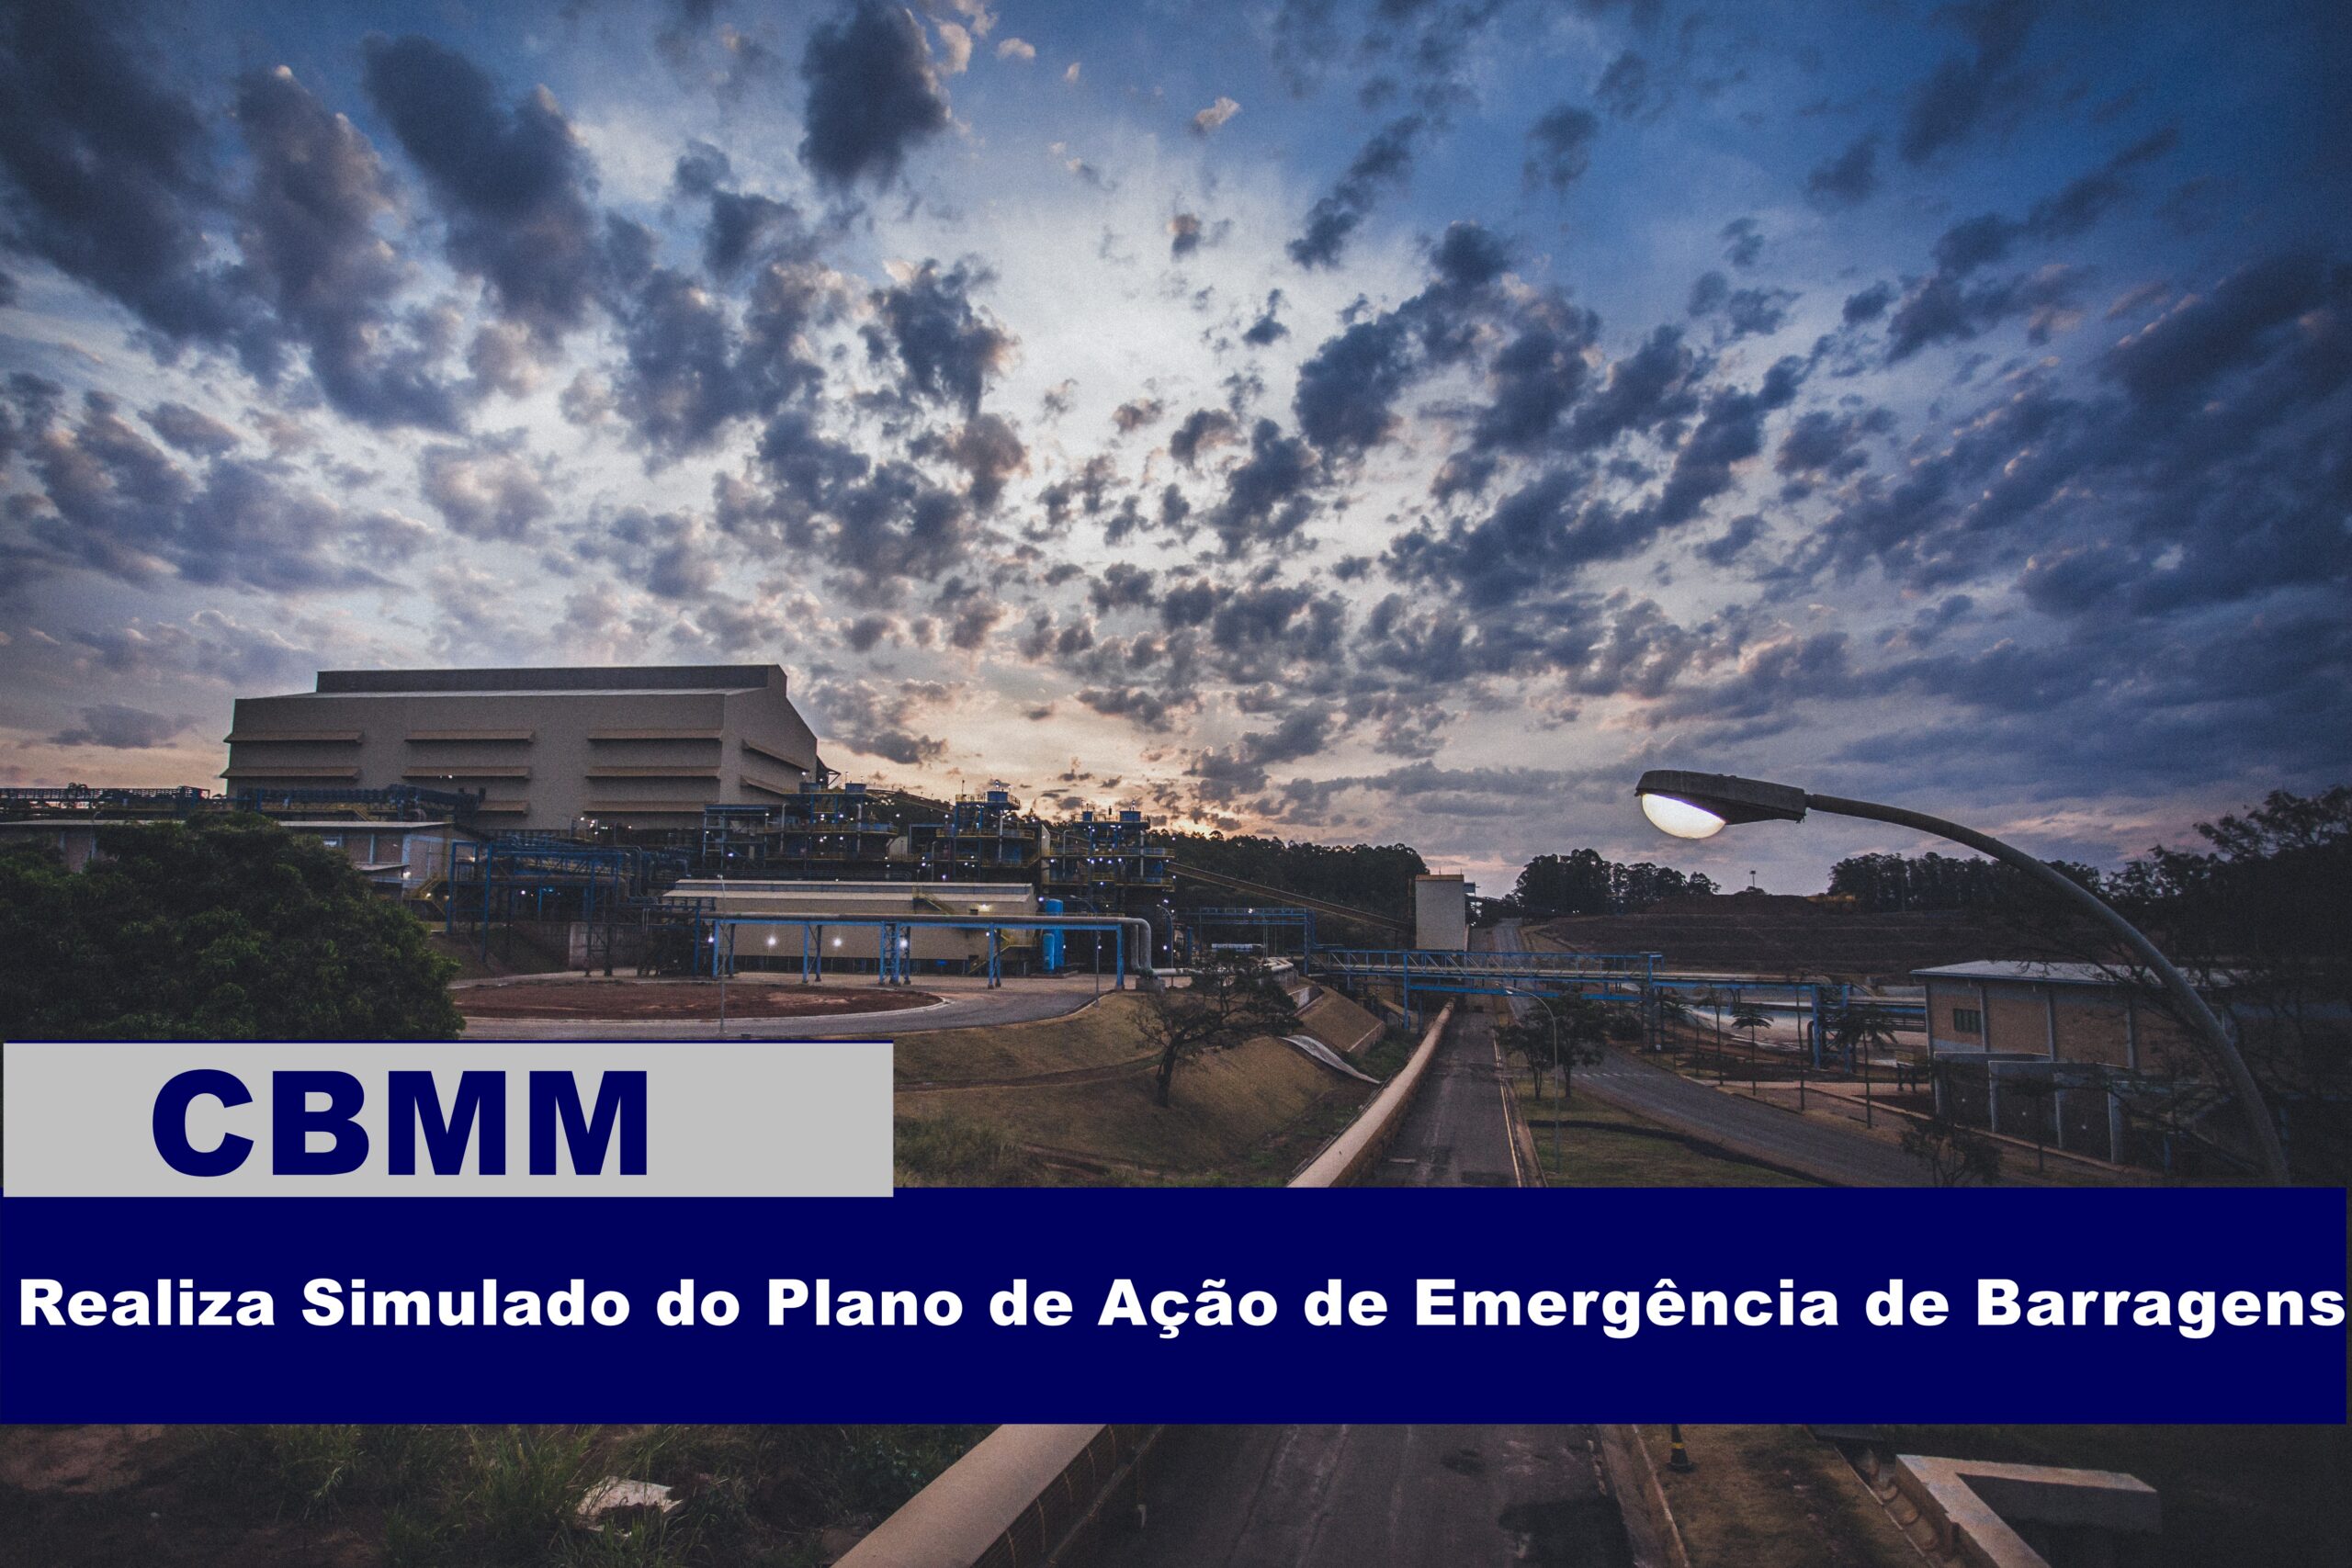 CBMM realiza Simulado do Plano de Ação de Emergência de Barragens